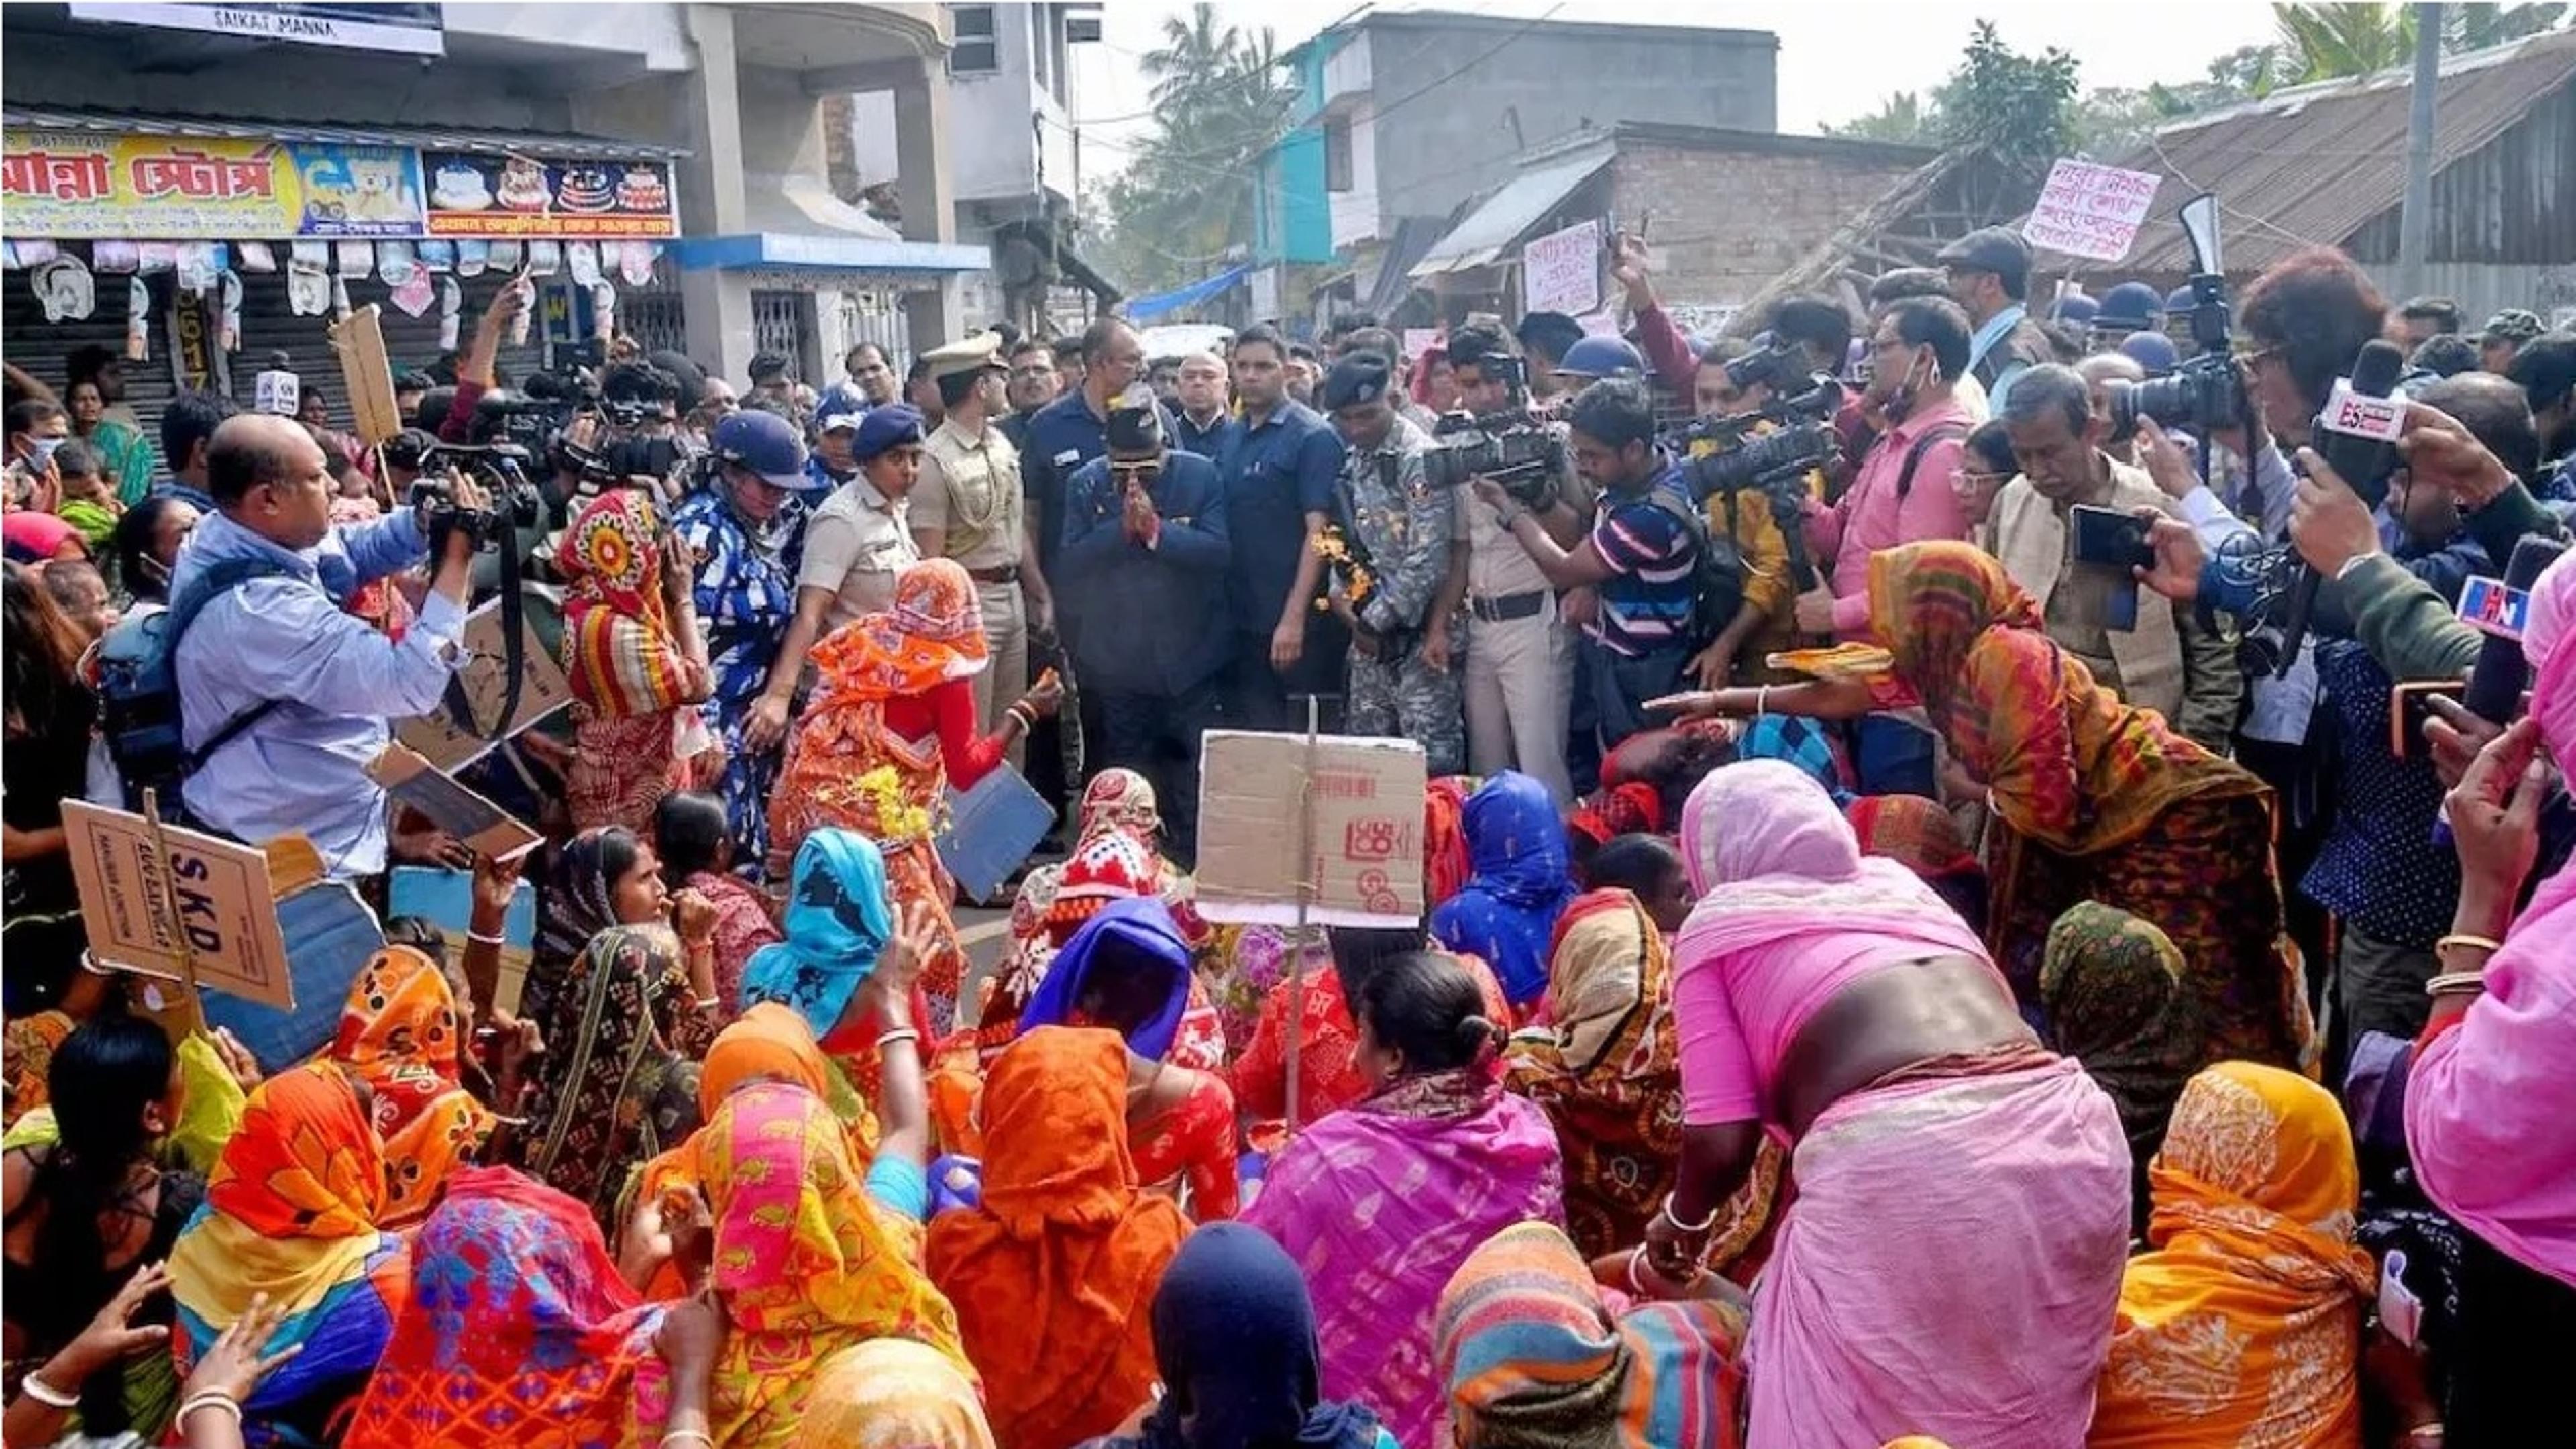 Sandeshkhali Violence: संदेशखाली बना सियासी जंग का मैदान, राष्ट्रपति शासन लगाने की मांग